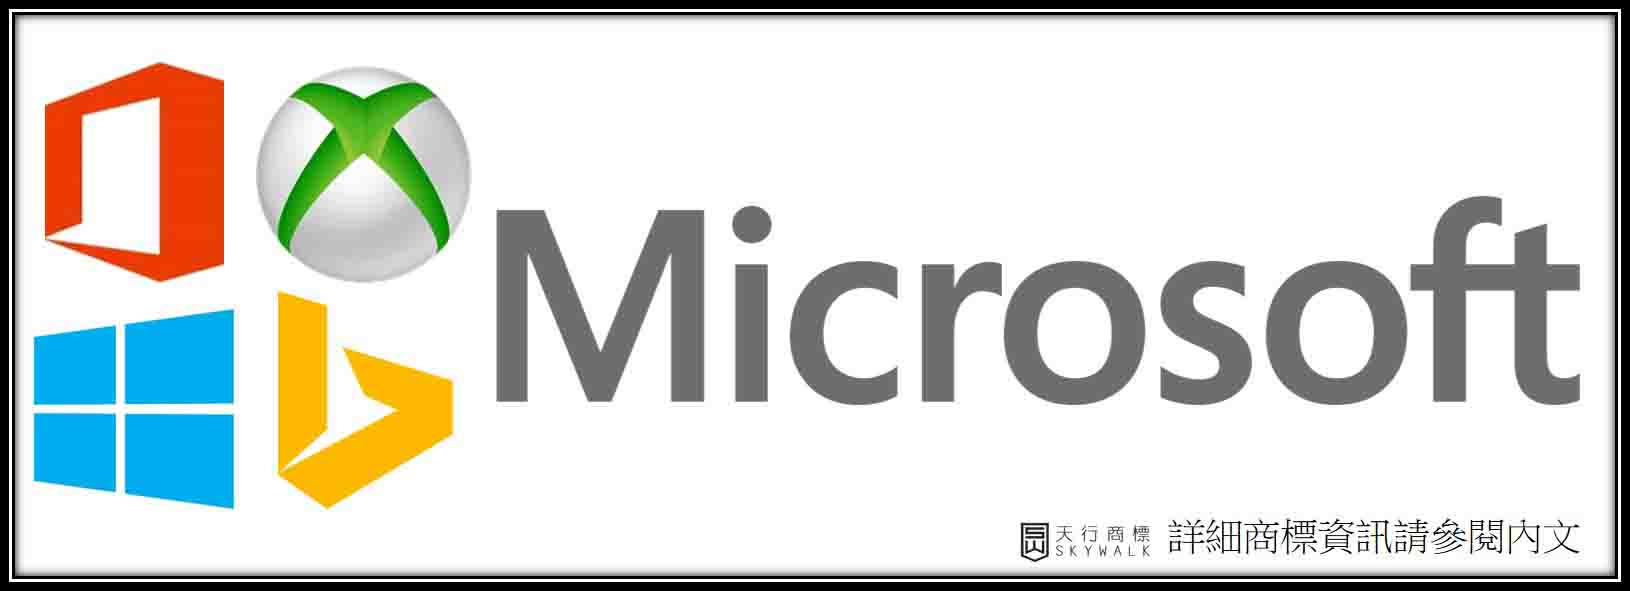 微软Microsoft四种颜色的意思